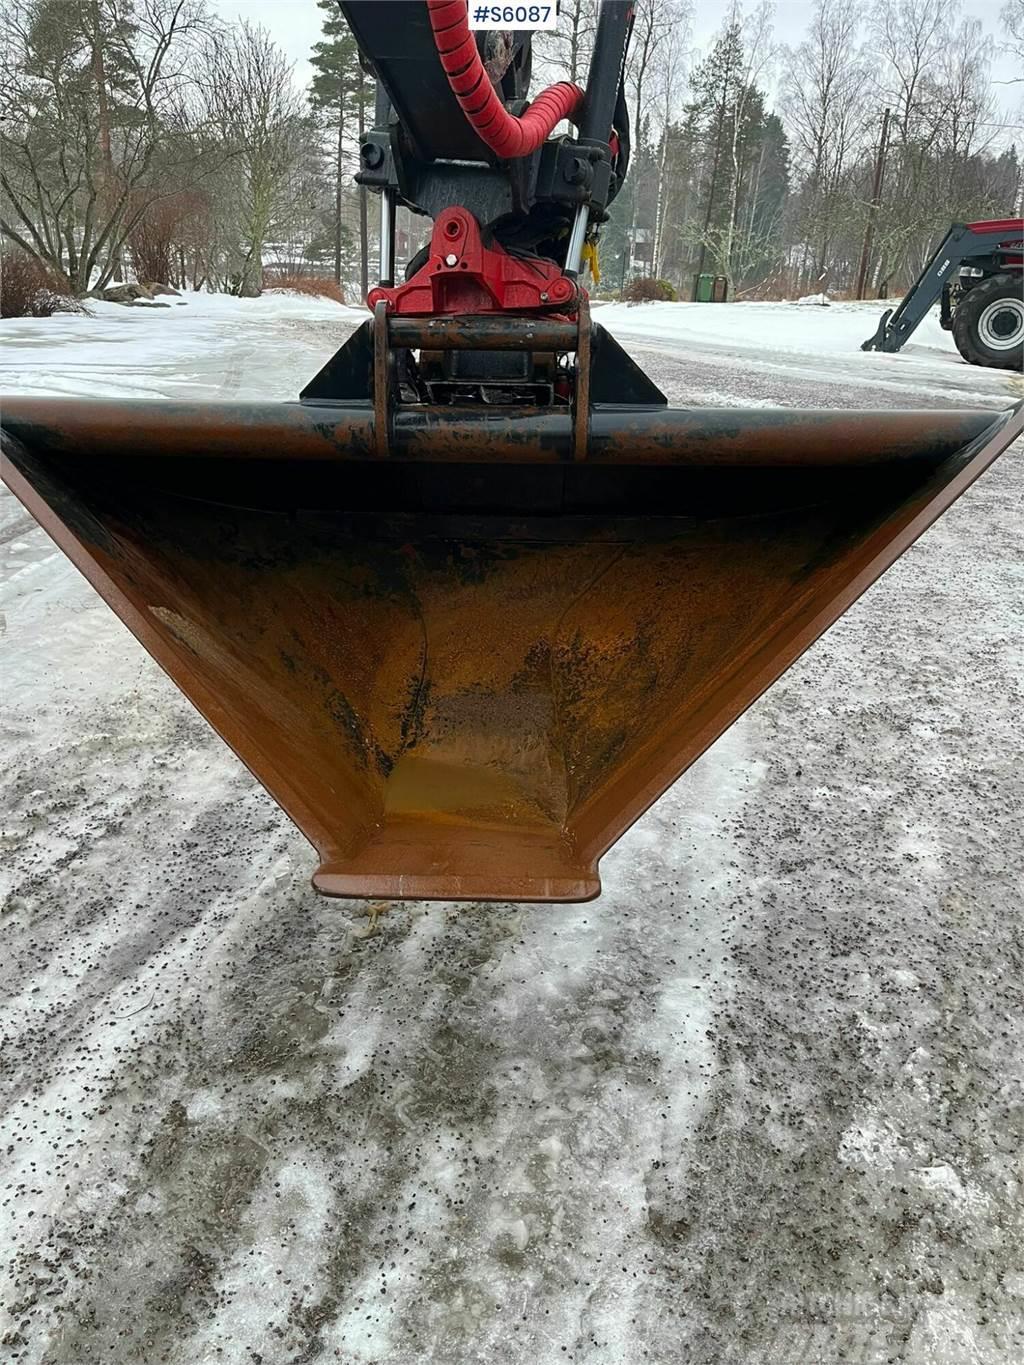 Götene UFO S70 Profile bucket Łyżki do ładowarek